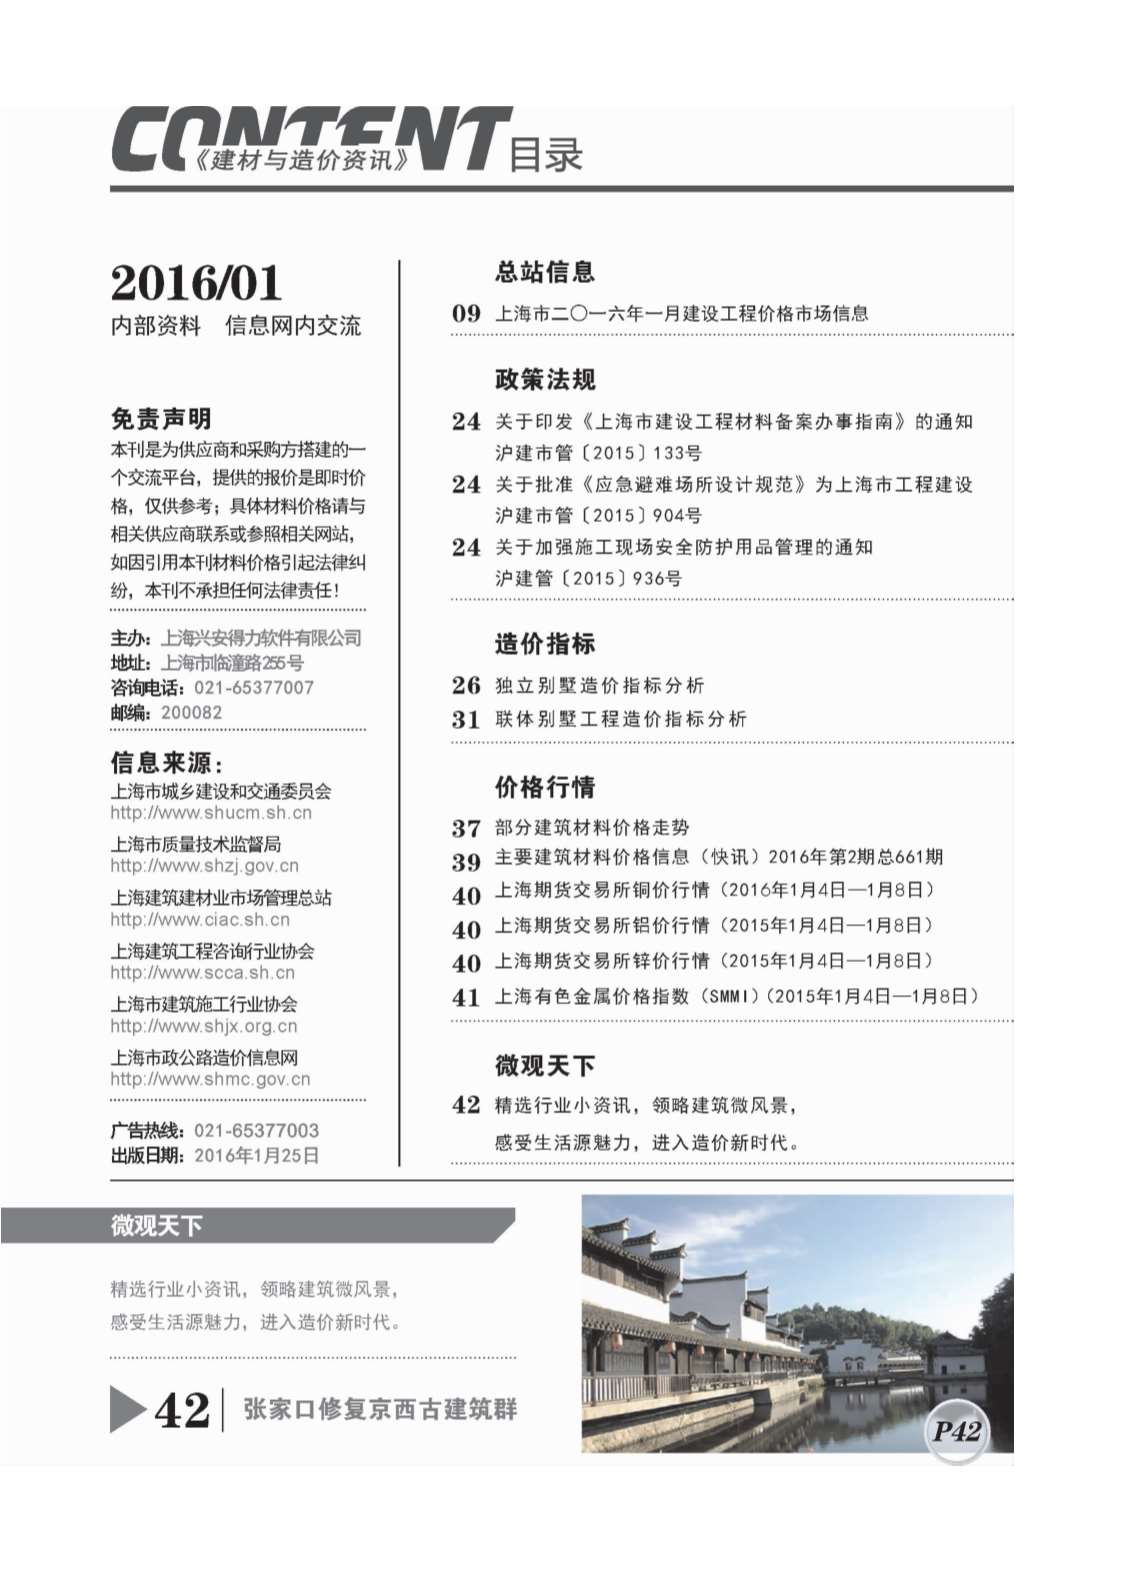 上海市2016年1月建设工程造价信息造价库信息价